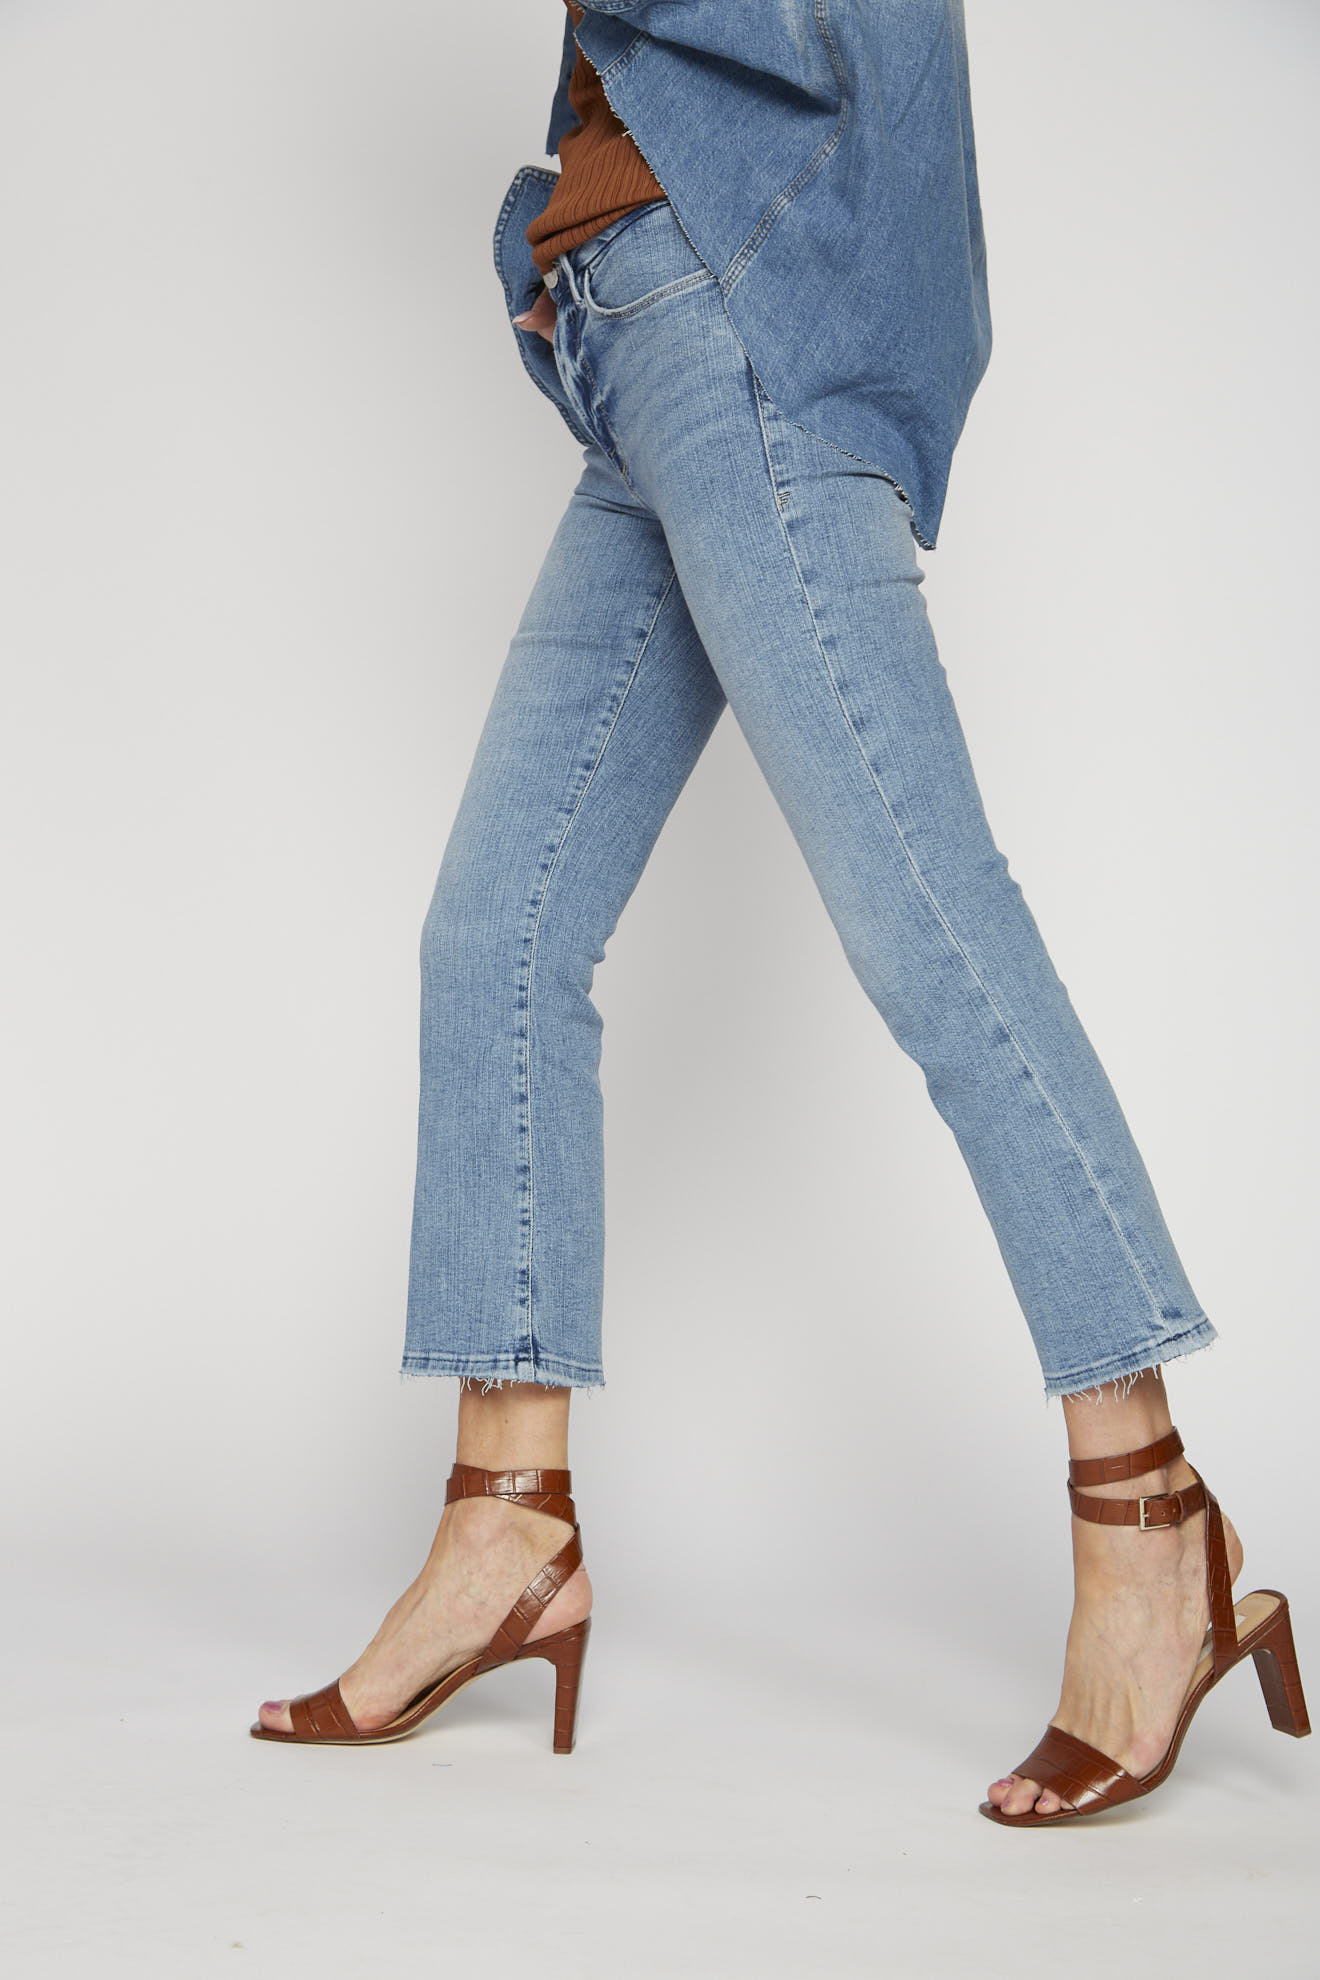 frame jeans denim plain mix model side